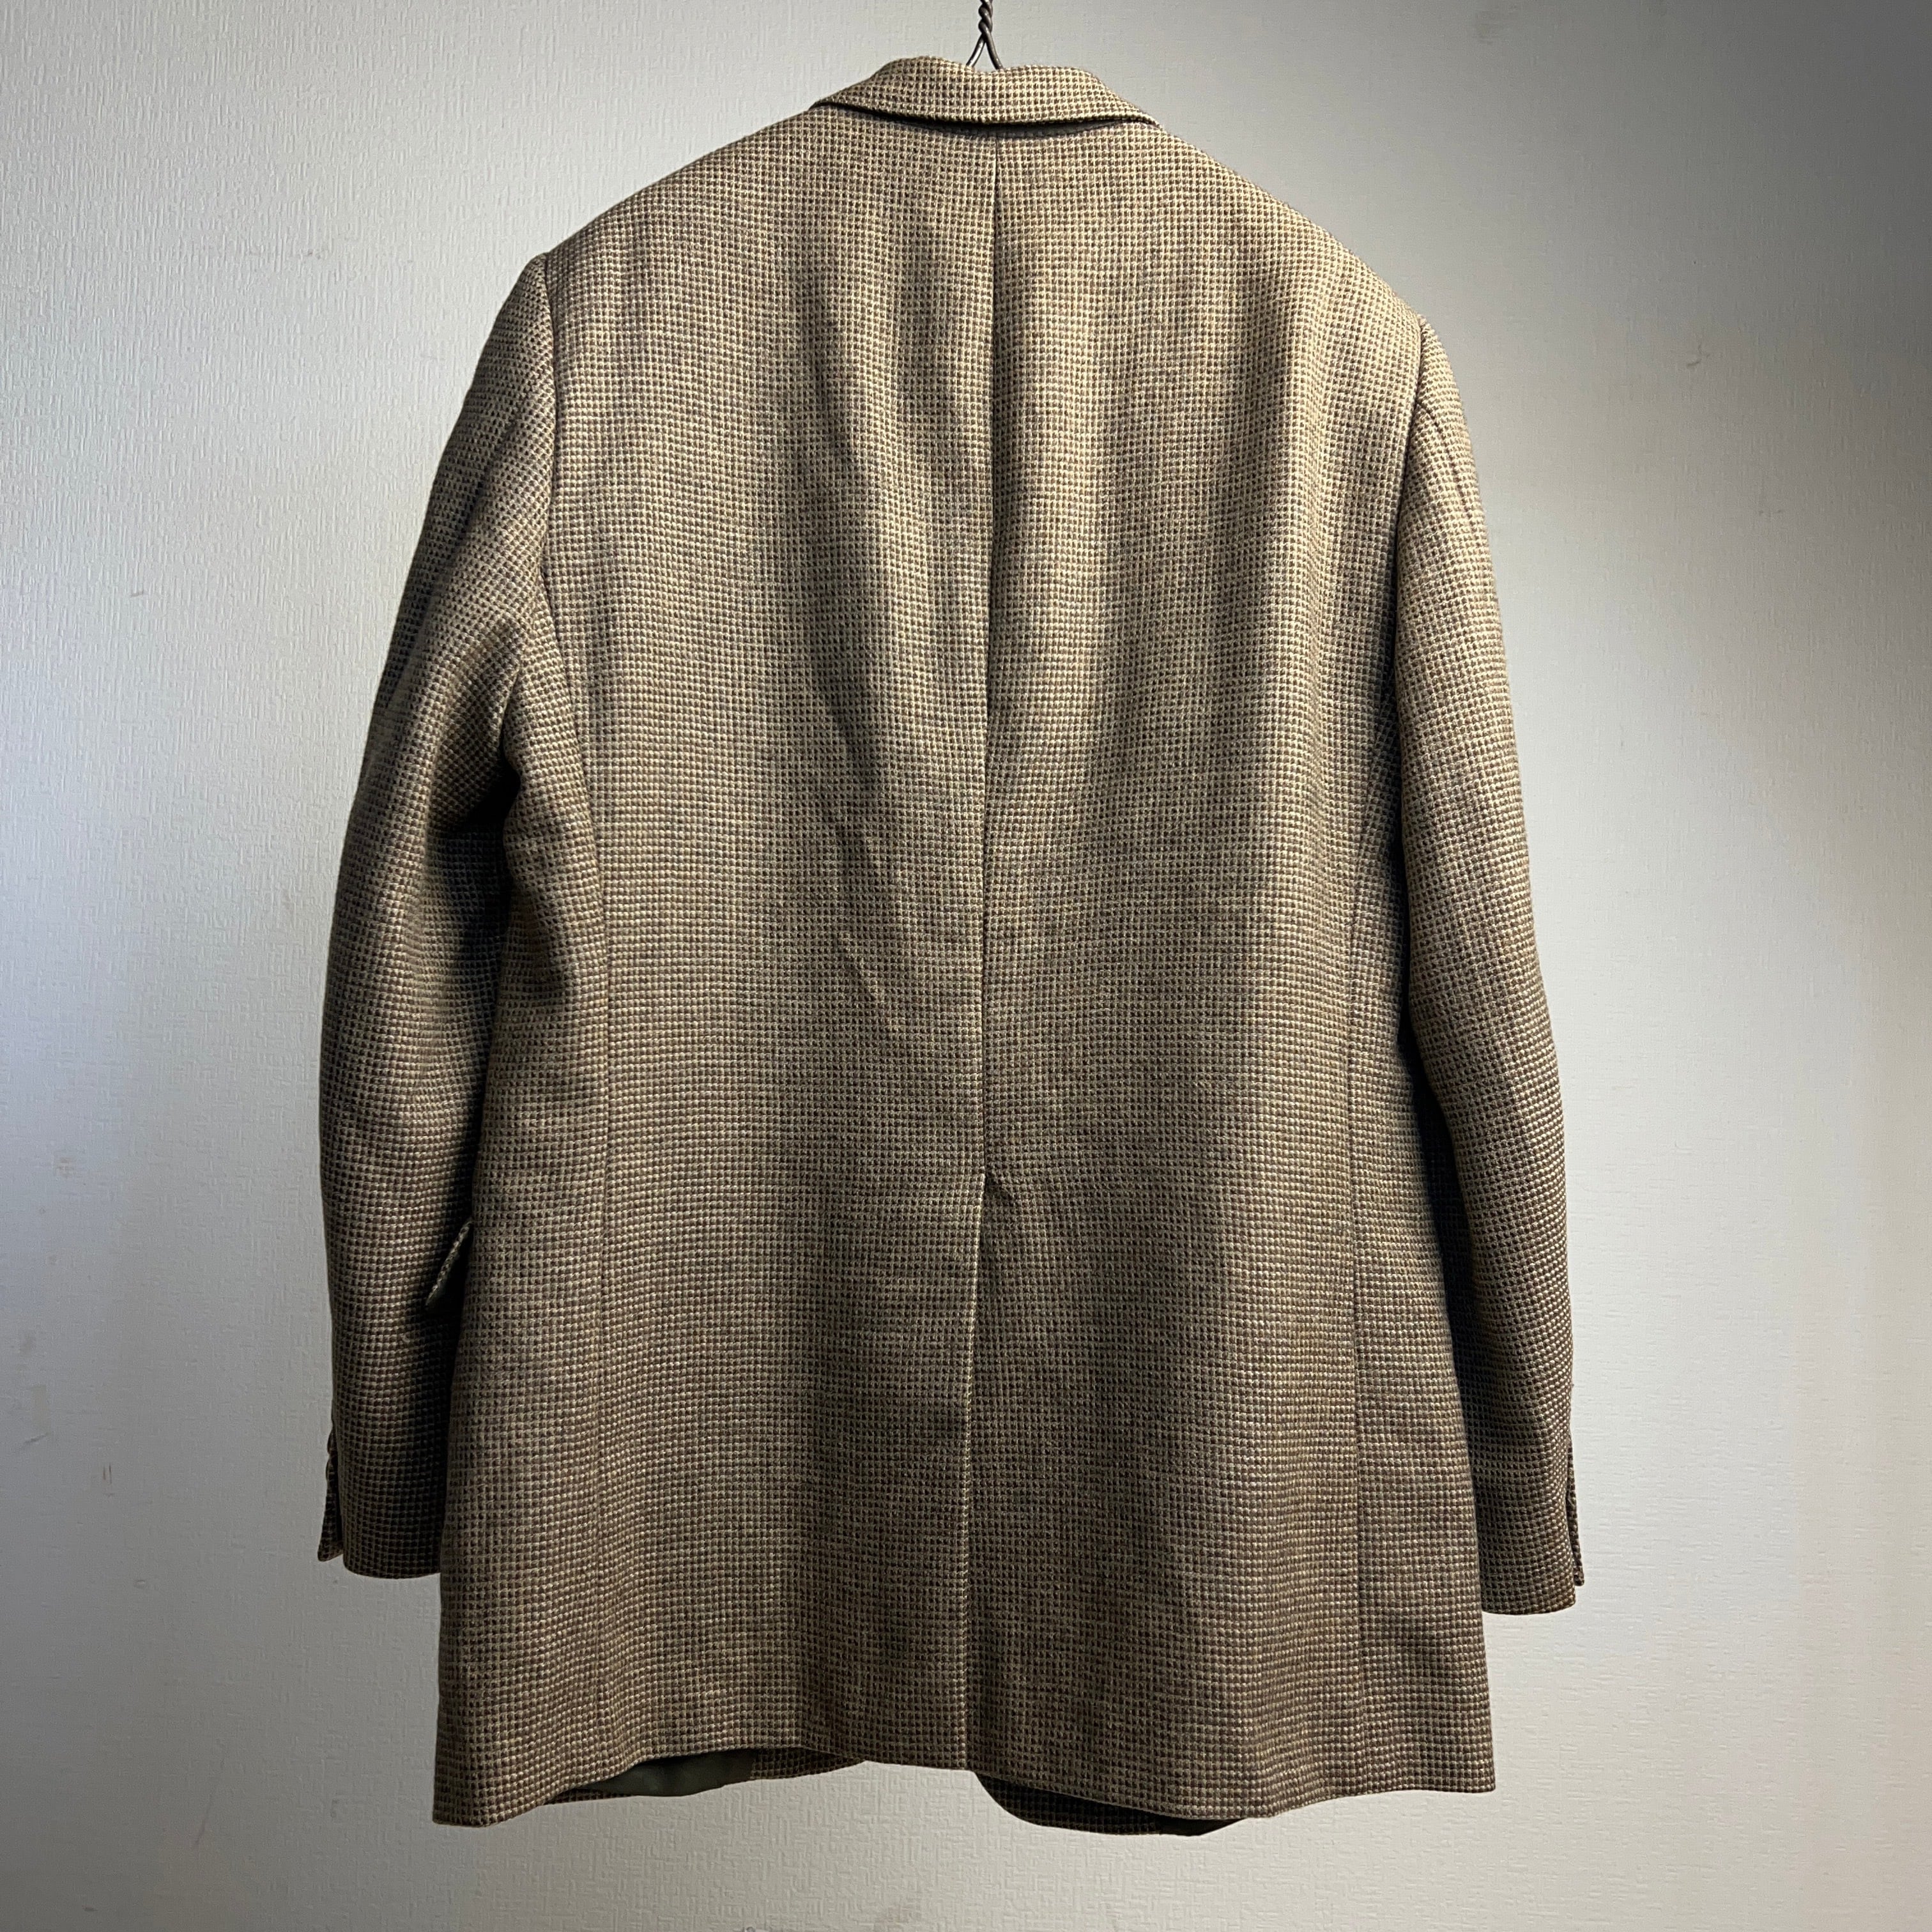 80's~90's “Christian Dior” Tweed Jacket USA製 ディオール ツィード テーラードジャケット  クラシック【0929A18】【送料無料】